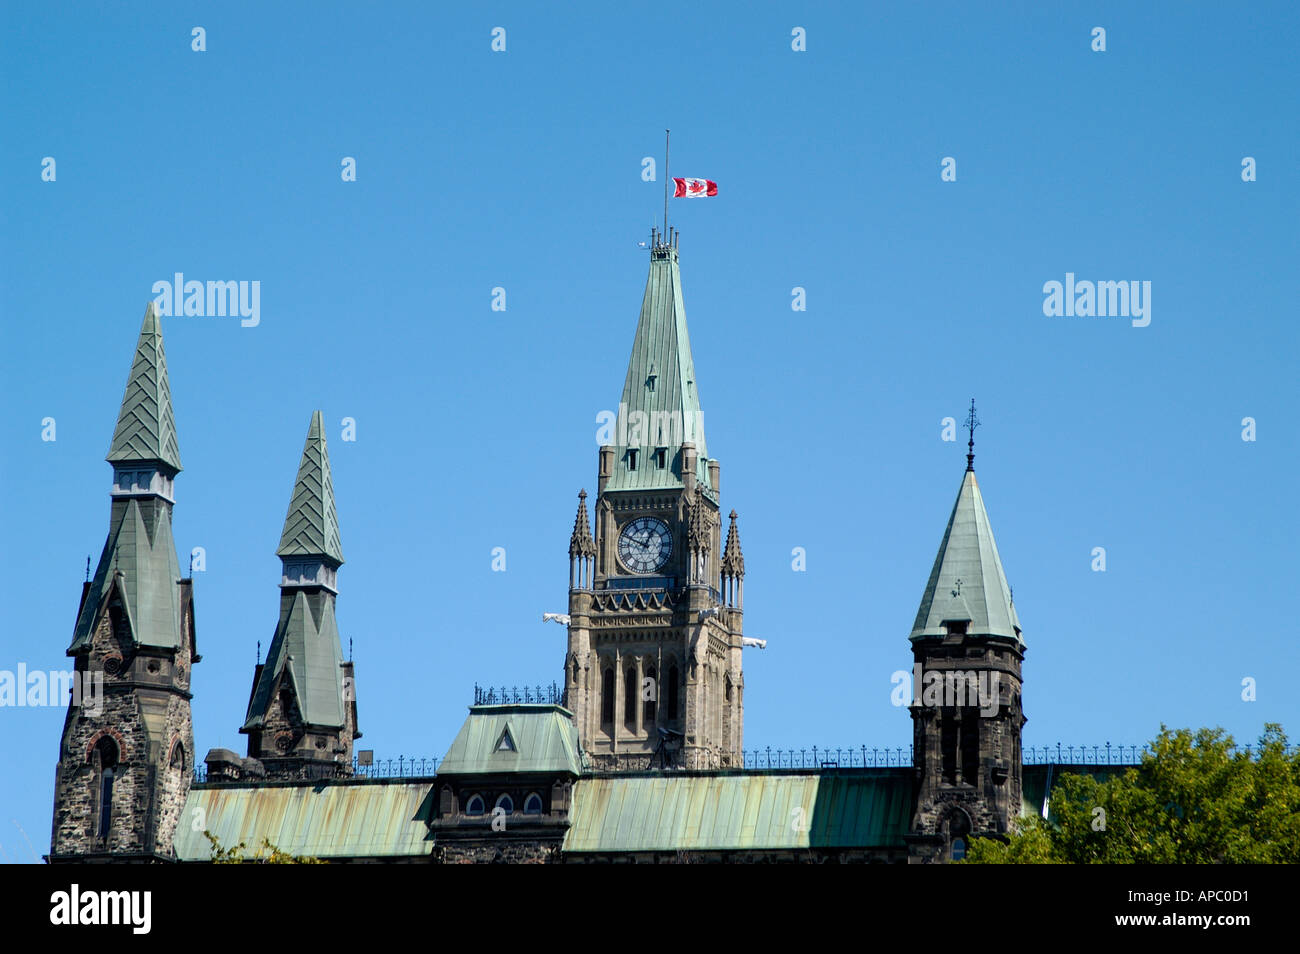 La tour de la Paix du Parlement d'un drapeau en berne Banque D'Images